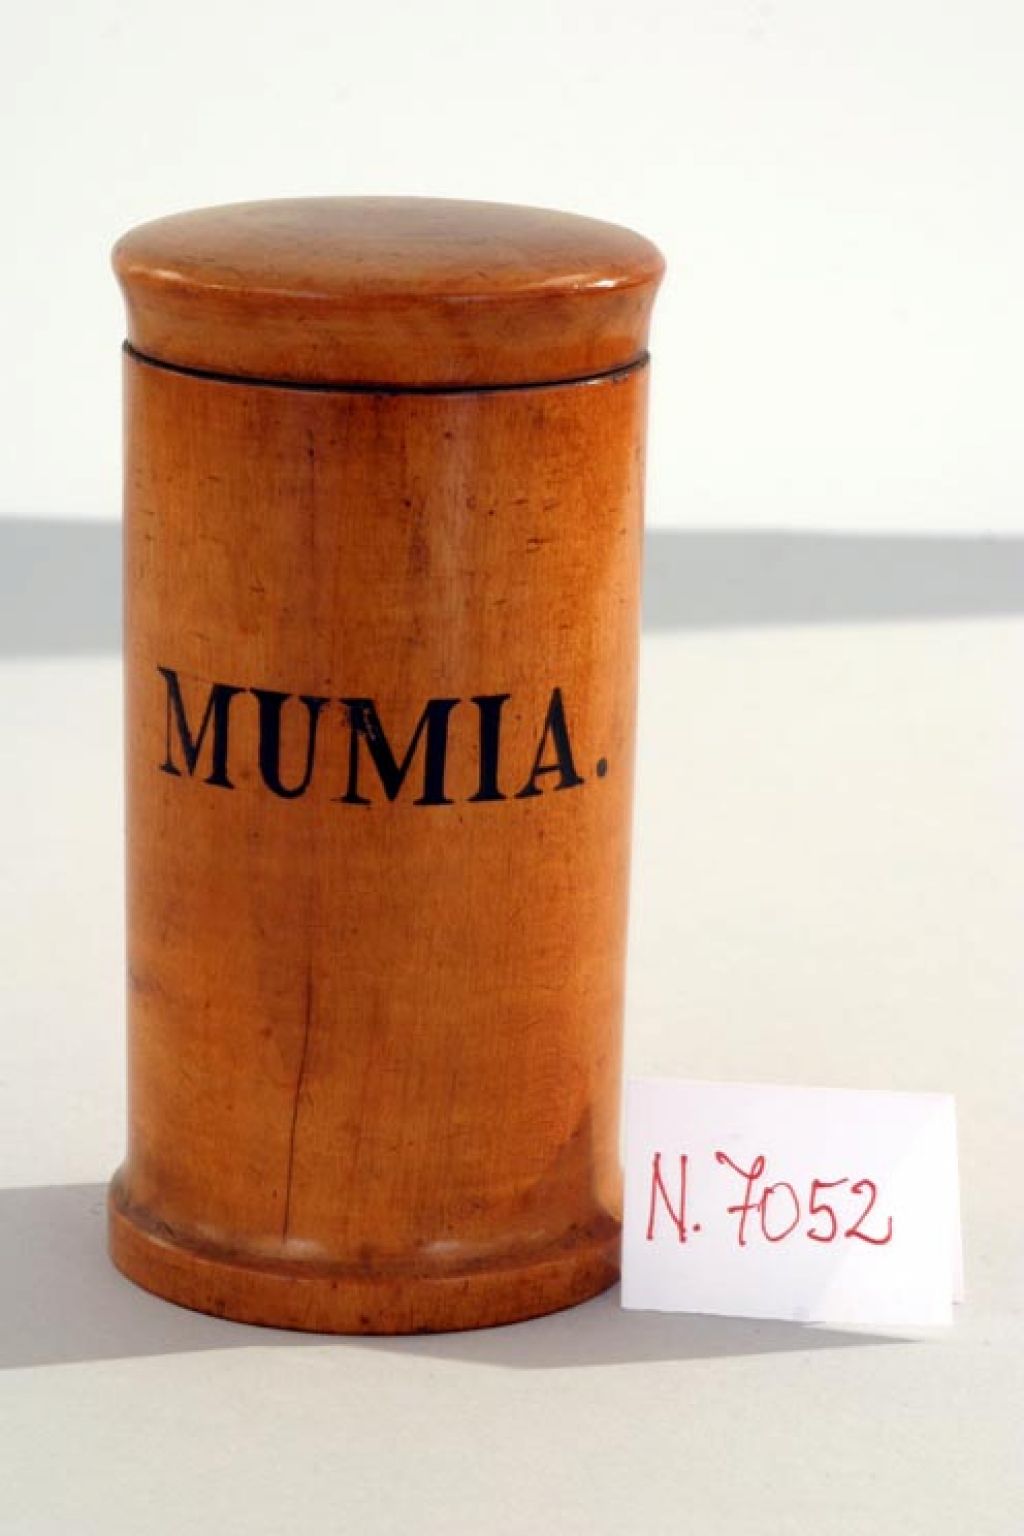 Mumia pomaga pri celjenju ran, epilepsiji in drugih boleznih